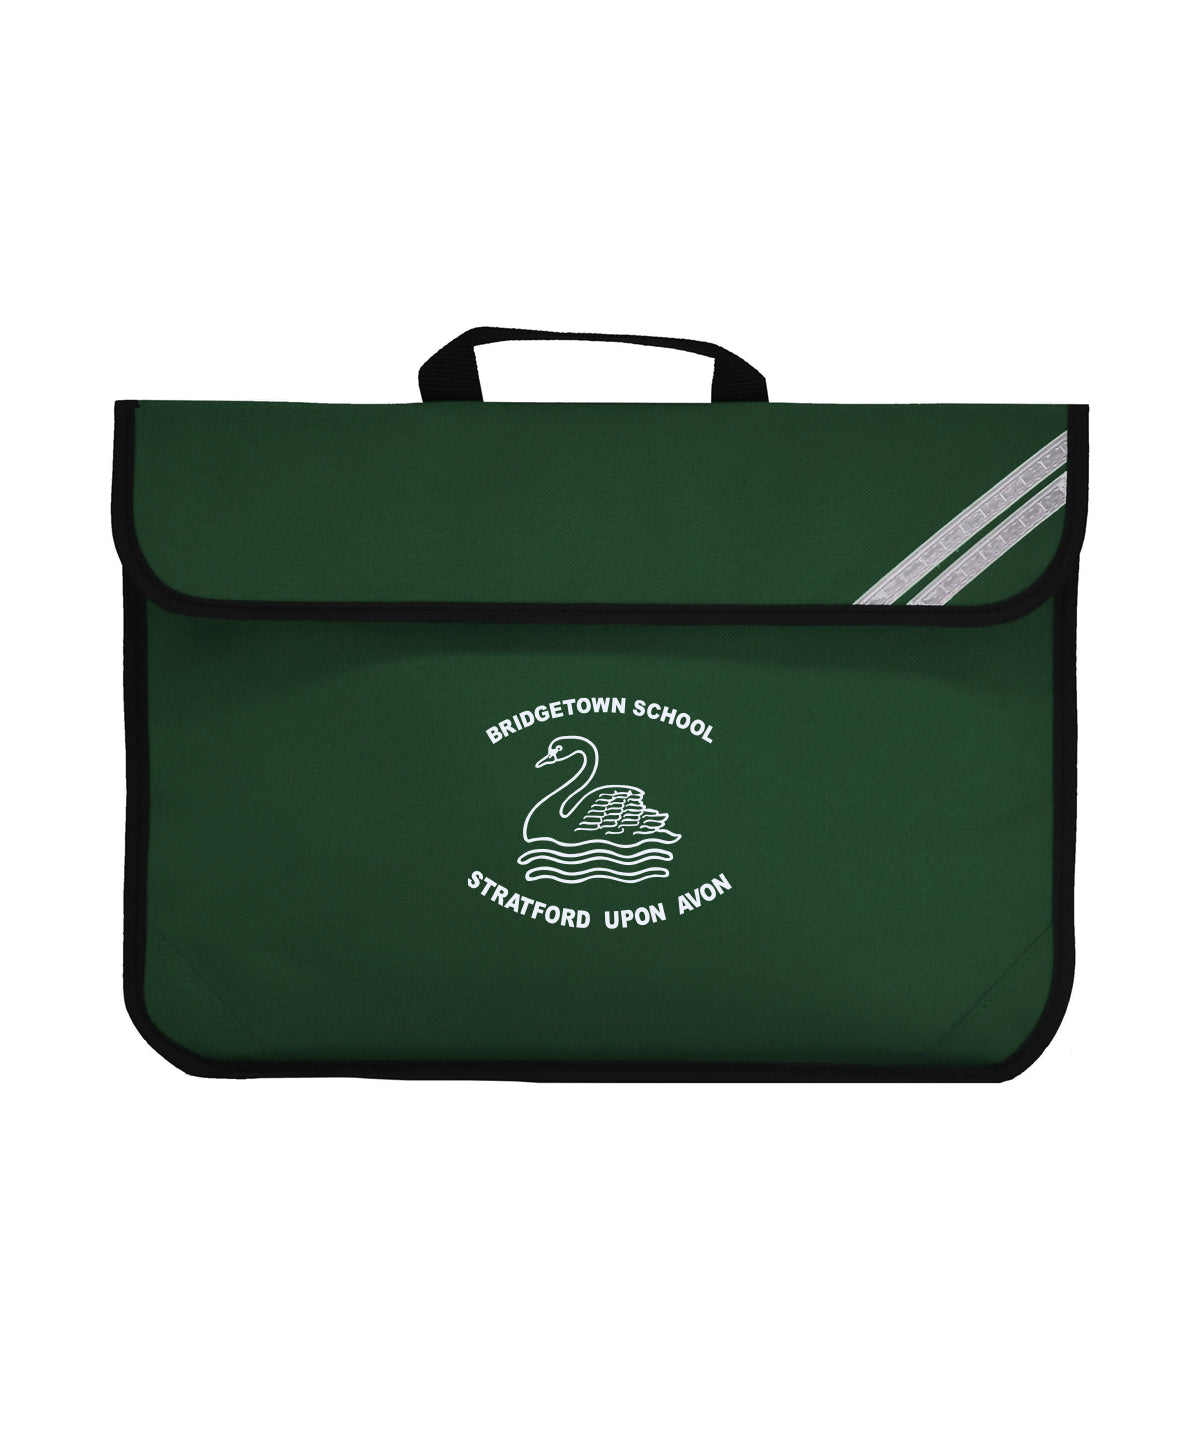 Bridgetown Primary School - Tray Book Bag